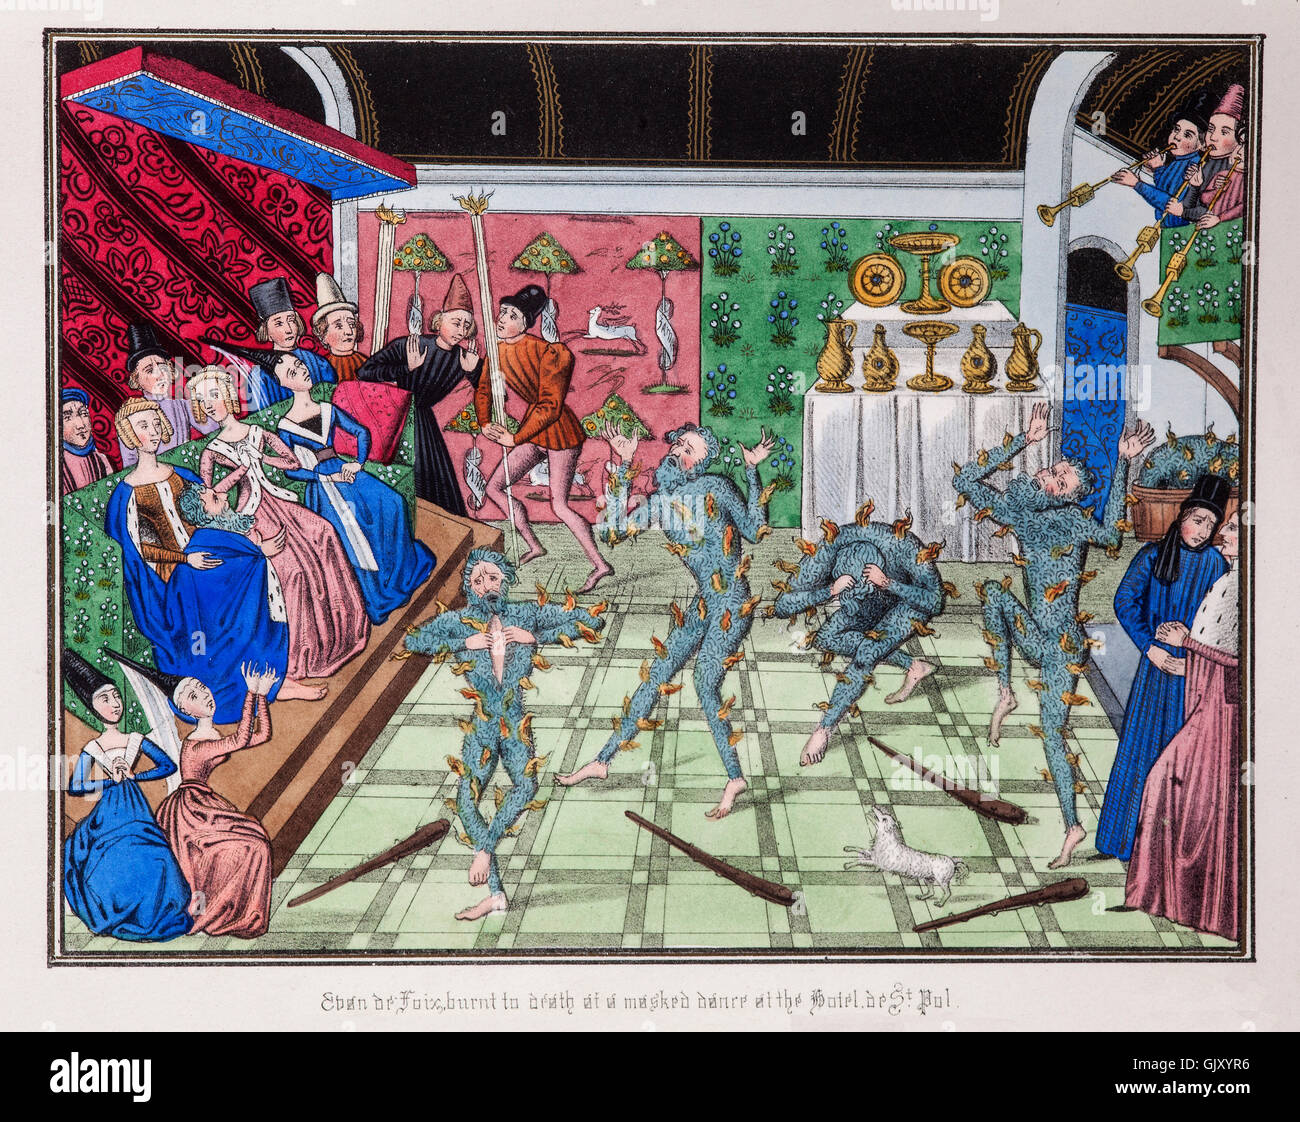 Incluso de Foix, uno de un grupo de hombres disfrazados como wild-hombres quemados a muerte por accidente, durante la celebración de matrimonios en el Hotel St Pol en París en 1393 Foto de stock